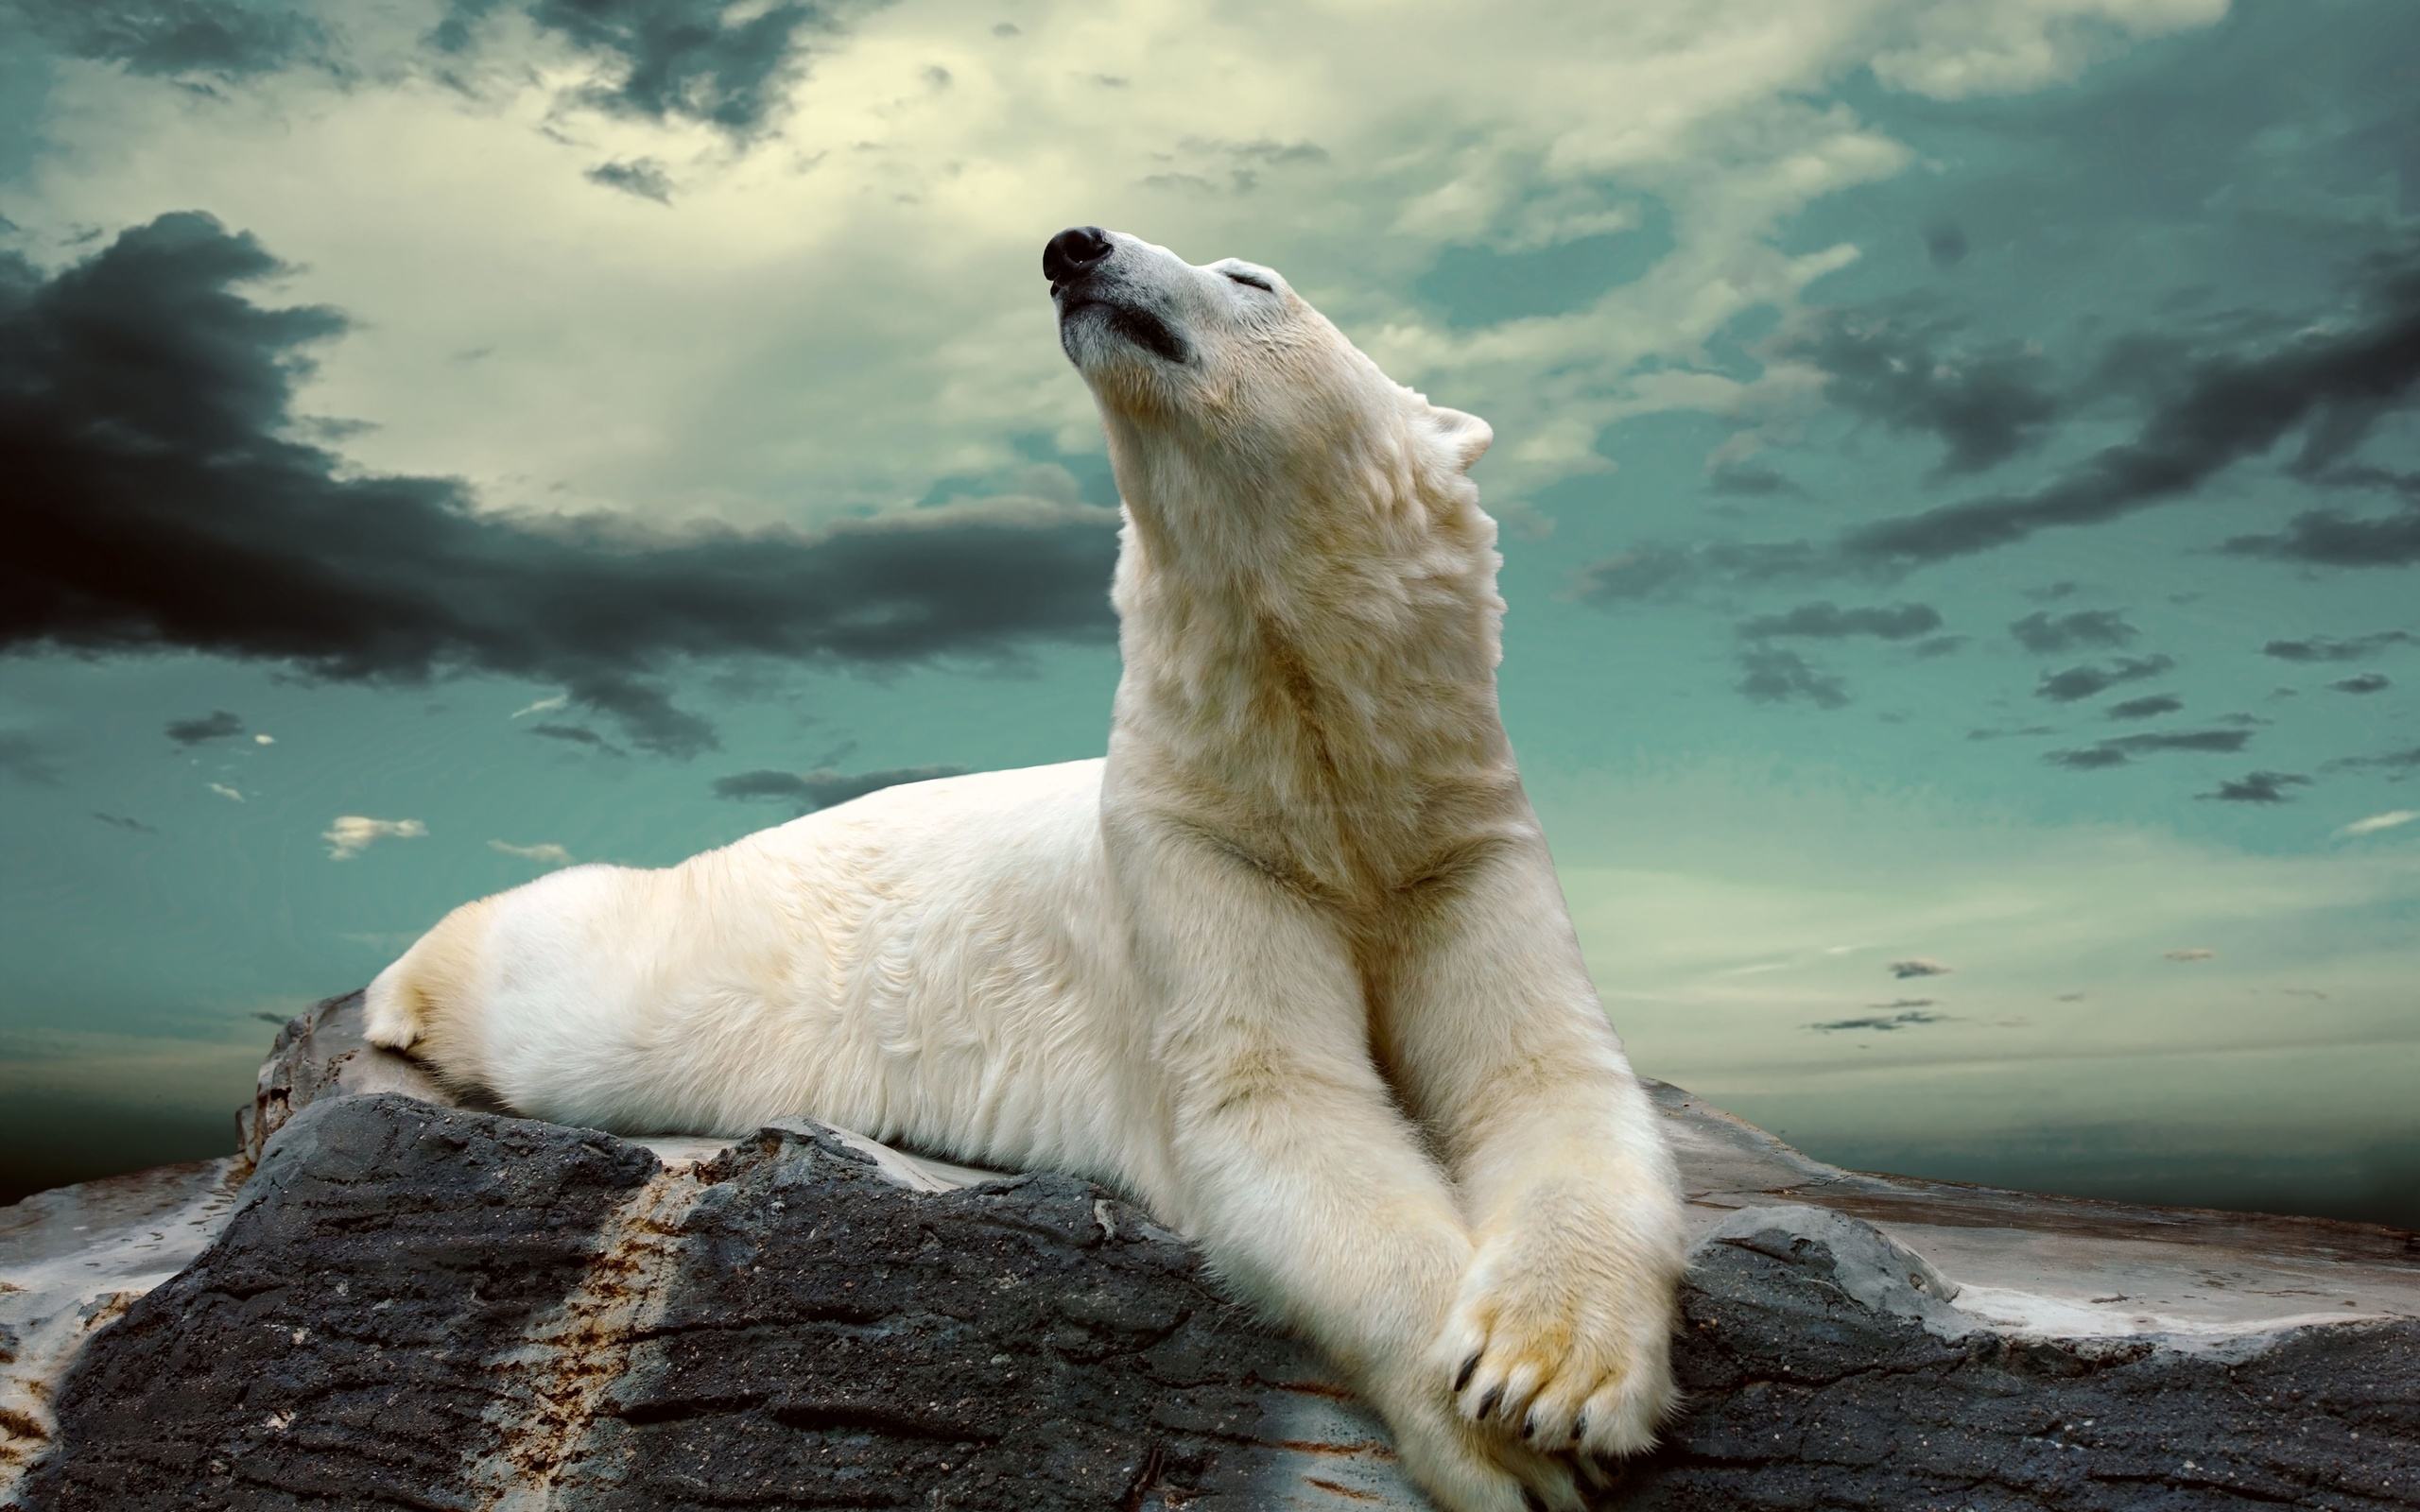 Hình ảnh gấu bắc cực: Hình ảnh về những chú gấu Bắc Cực sẽ đem tới cho bạn những trải nghiệm khó quên, với vẻ đẹp tự nhiên ngọt ngào và hoang sơ. Hãy thưởng thức các bức ảnh này và cảm nhận sức mạnh của sự độc đáo và thuần khiết.